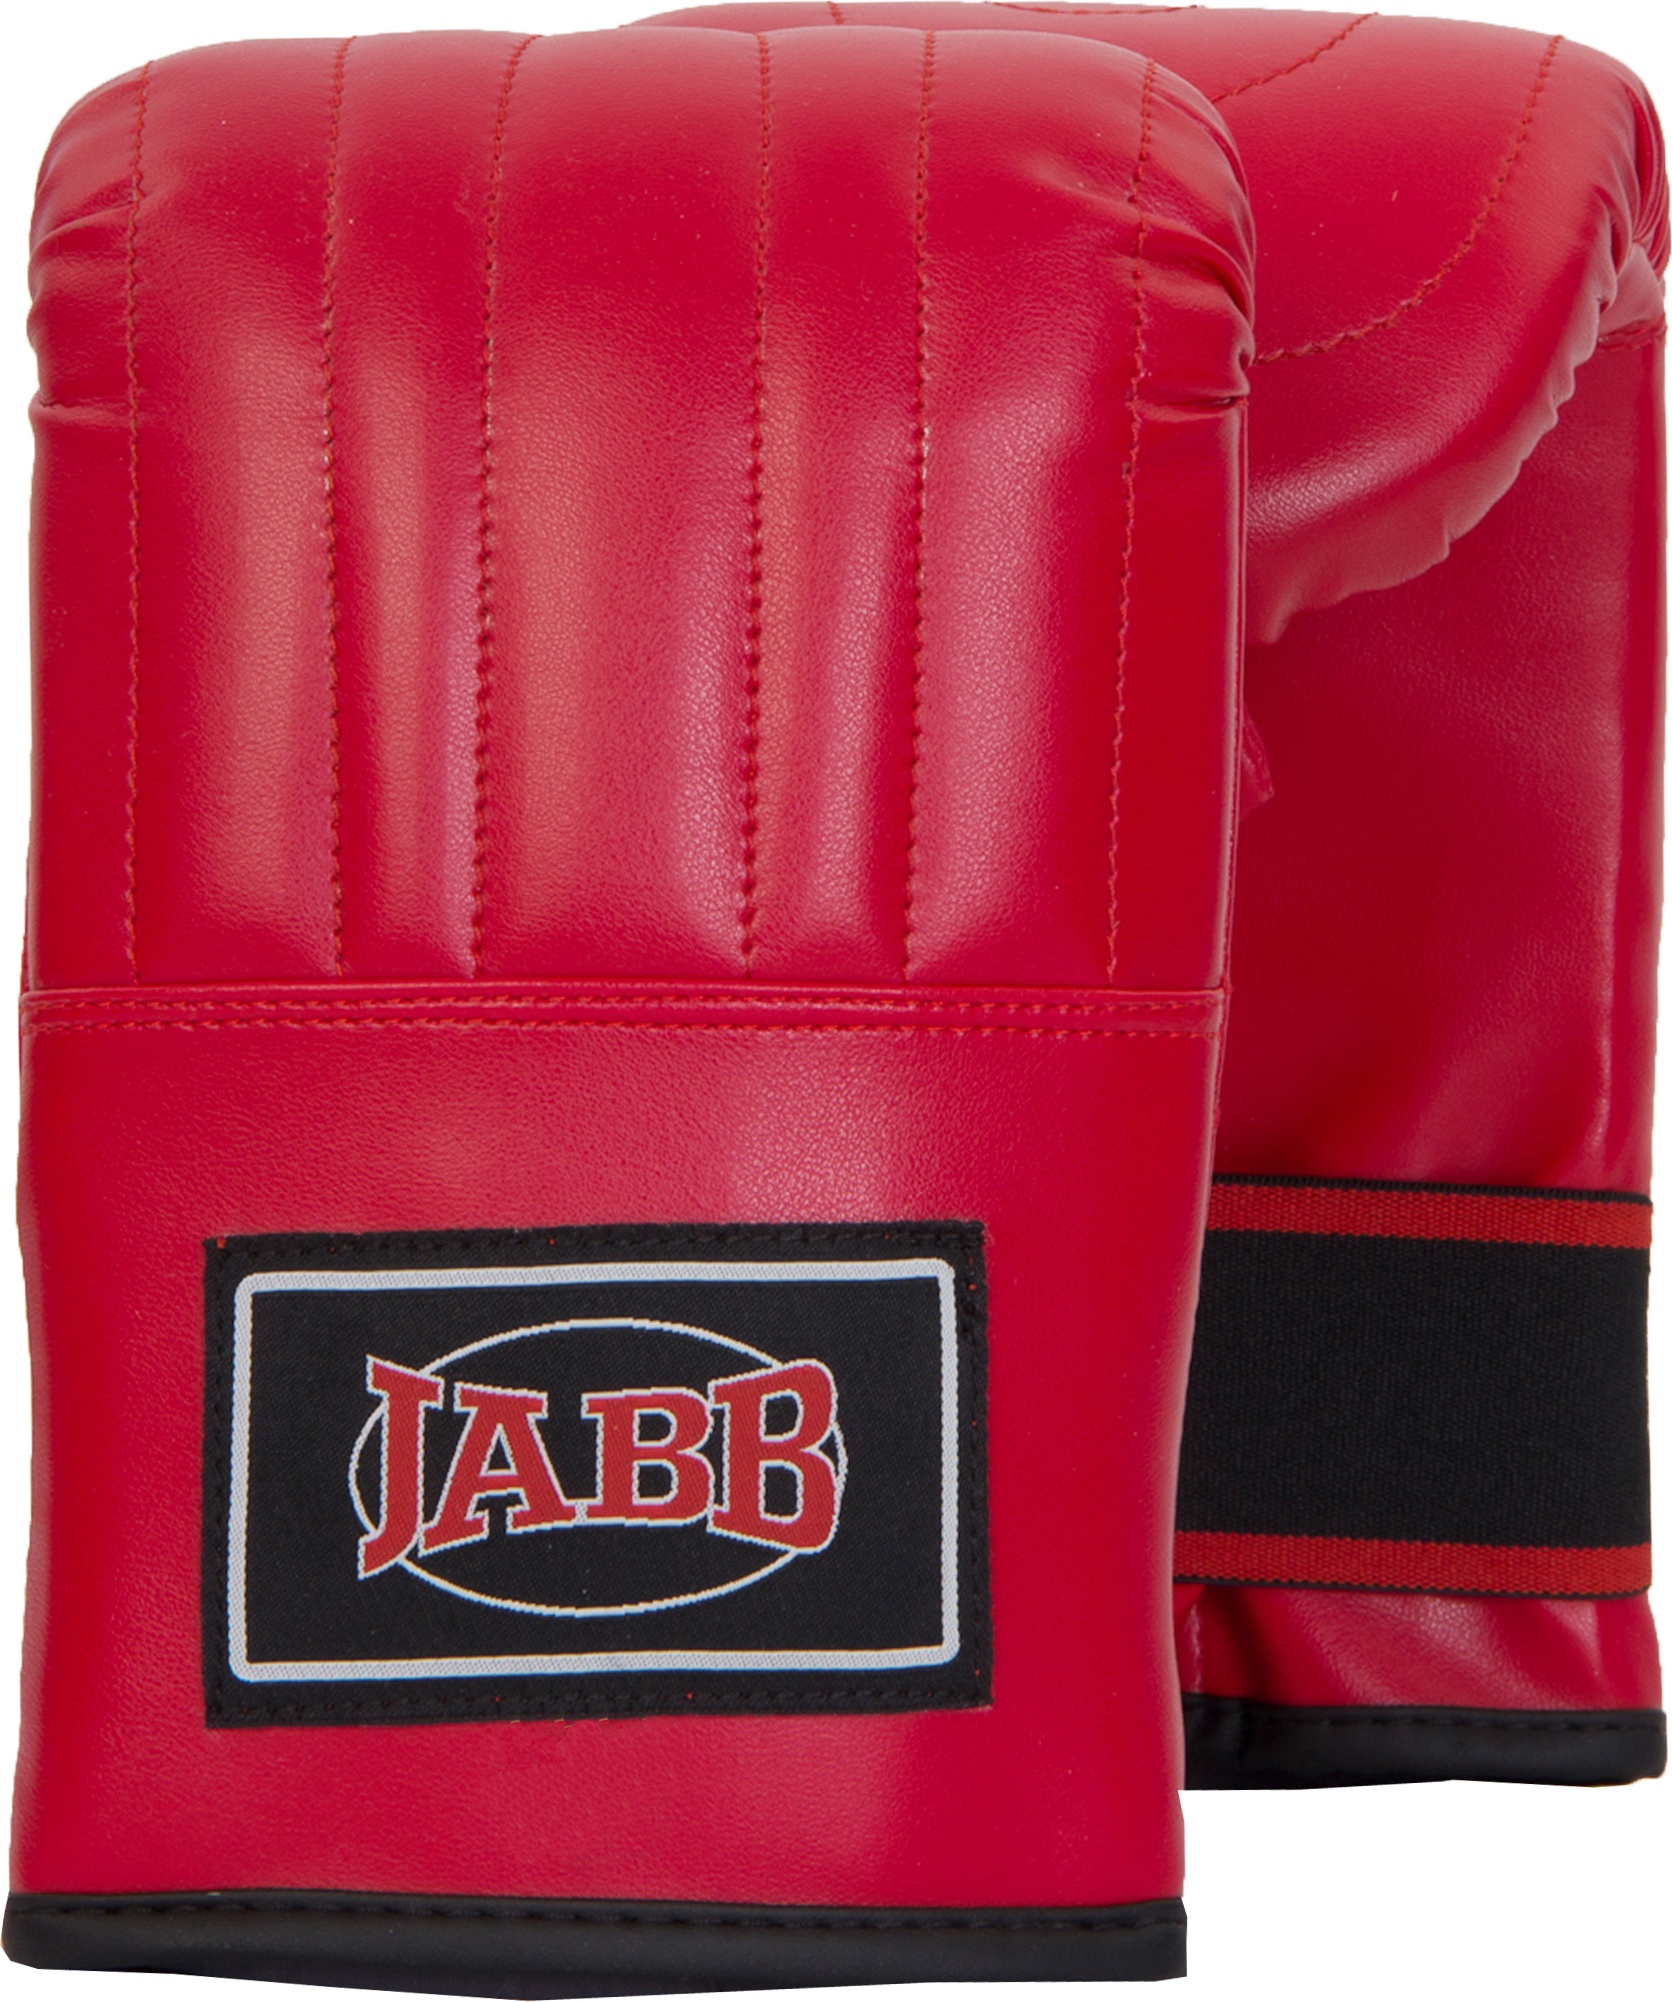 Снарядные перчатки Jabb JE-2075, красный, XL